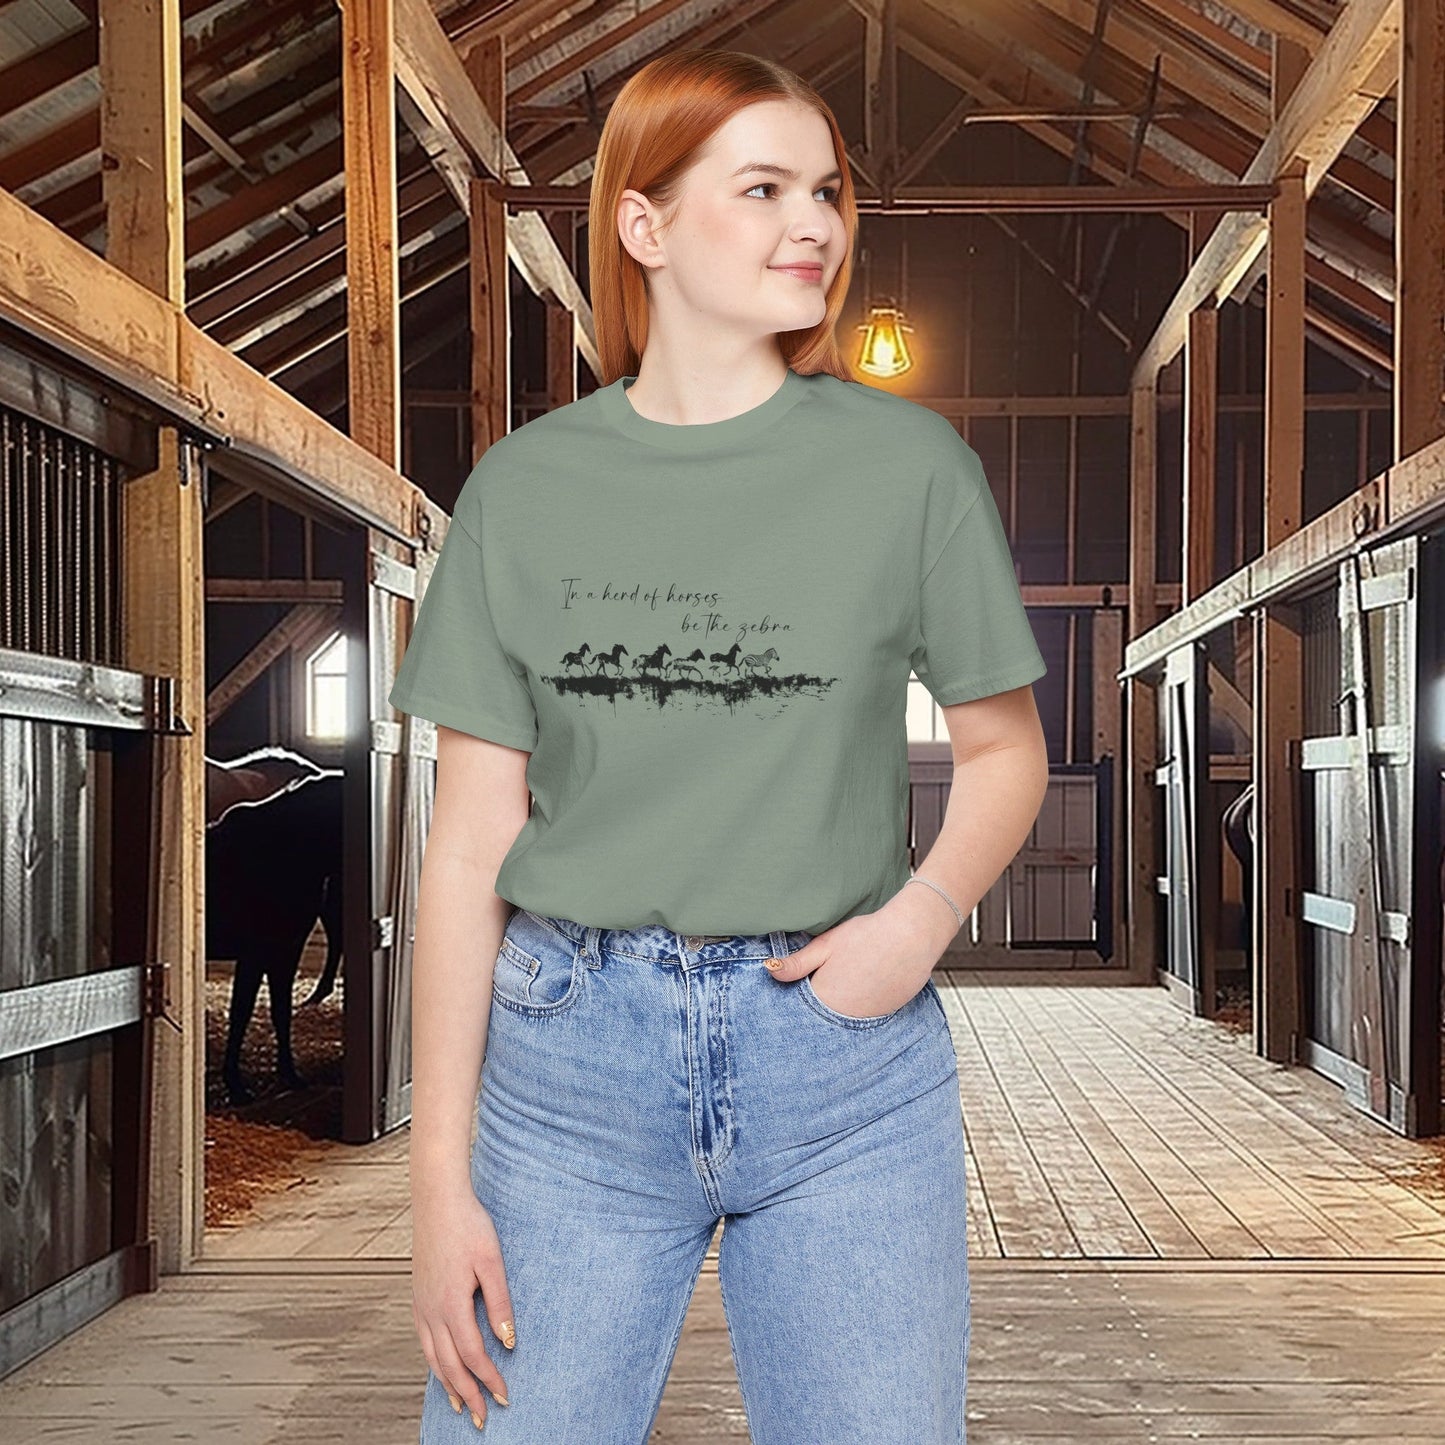 Horses and Zebra T-shirt, Mental Health Tee, Motivational Tee for Horse Lovers or Zebra Lovers, In a herd of horse...be the zebra, - FlooredByArt